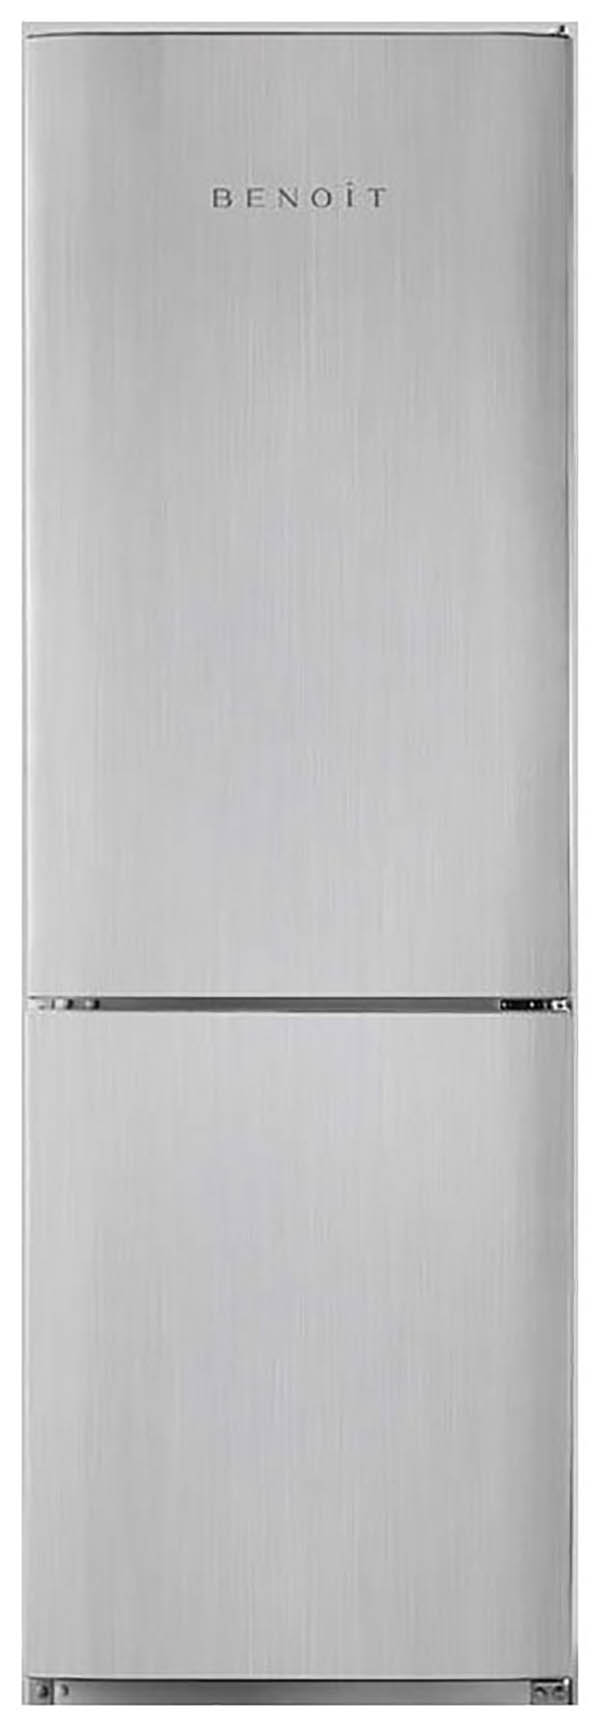 Холодильник Benoit 314 серебристый термоэлектрический комплекс охлаждения холодильной системы пельтье полупроводниковый охладитель